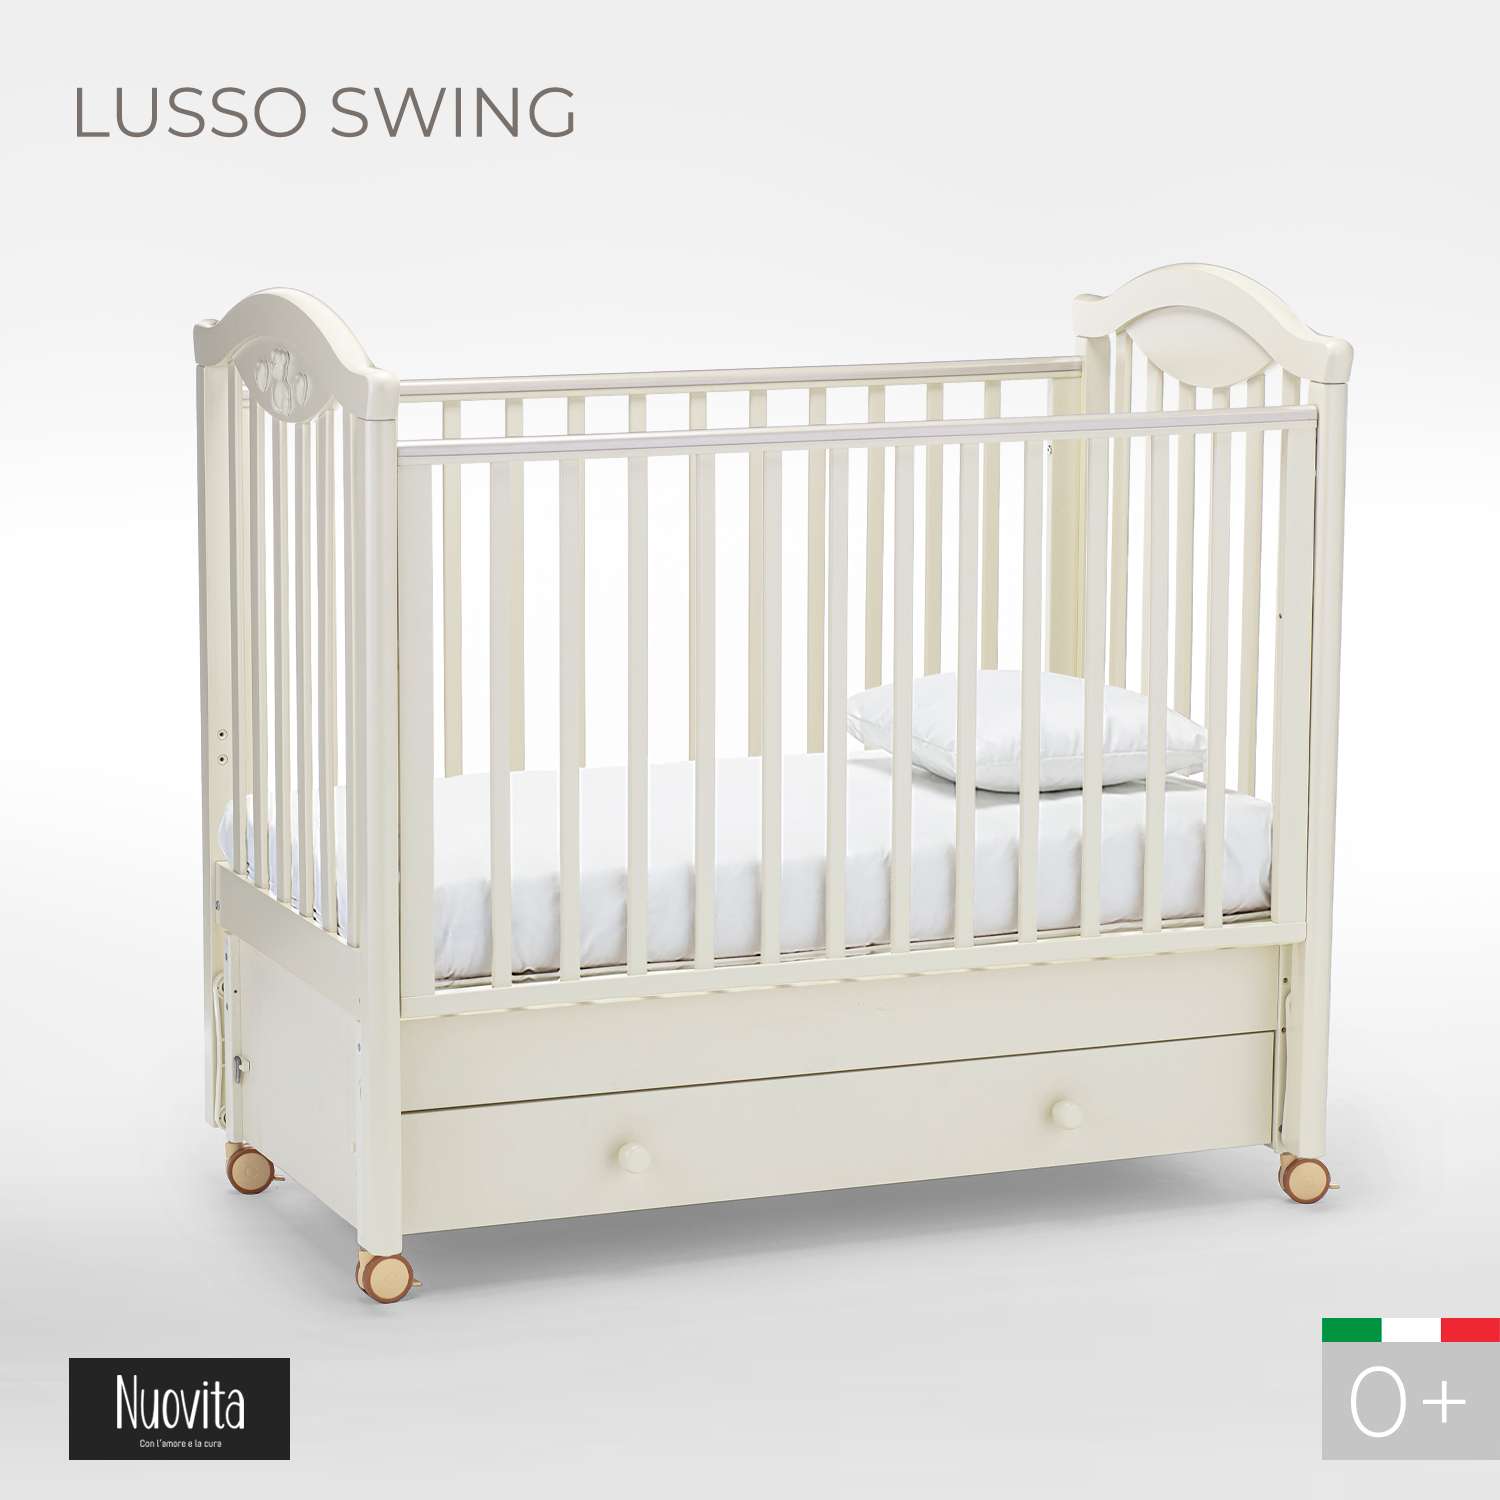 Детская кроватка Nuovita Lusso Swing прямоугольная, продольный маятник (ваниль) - фото 2